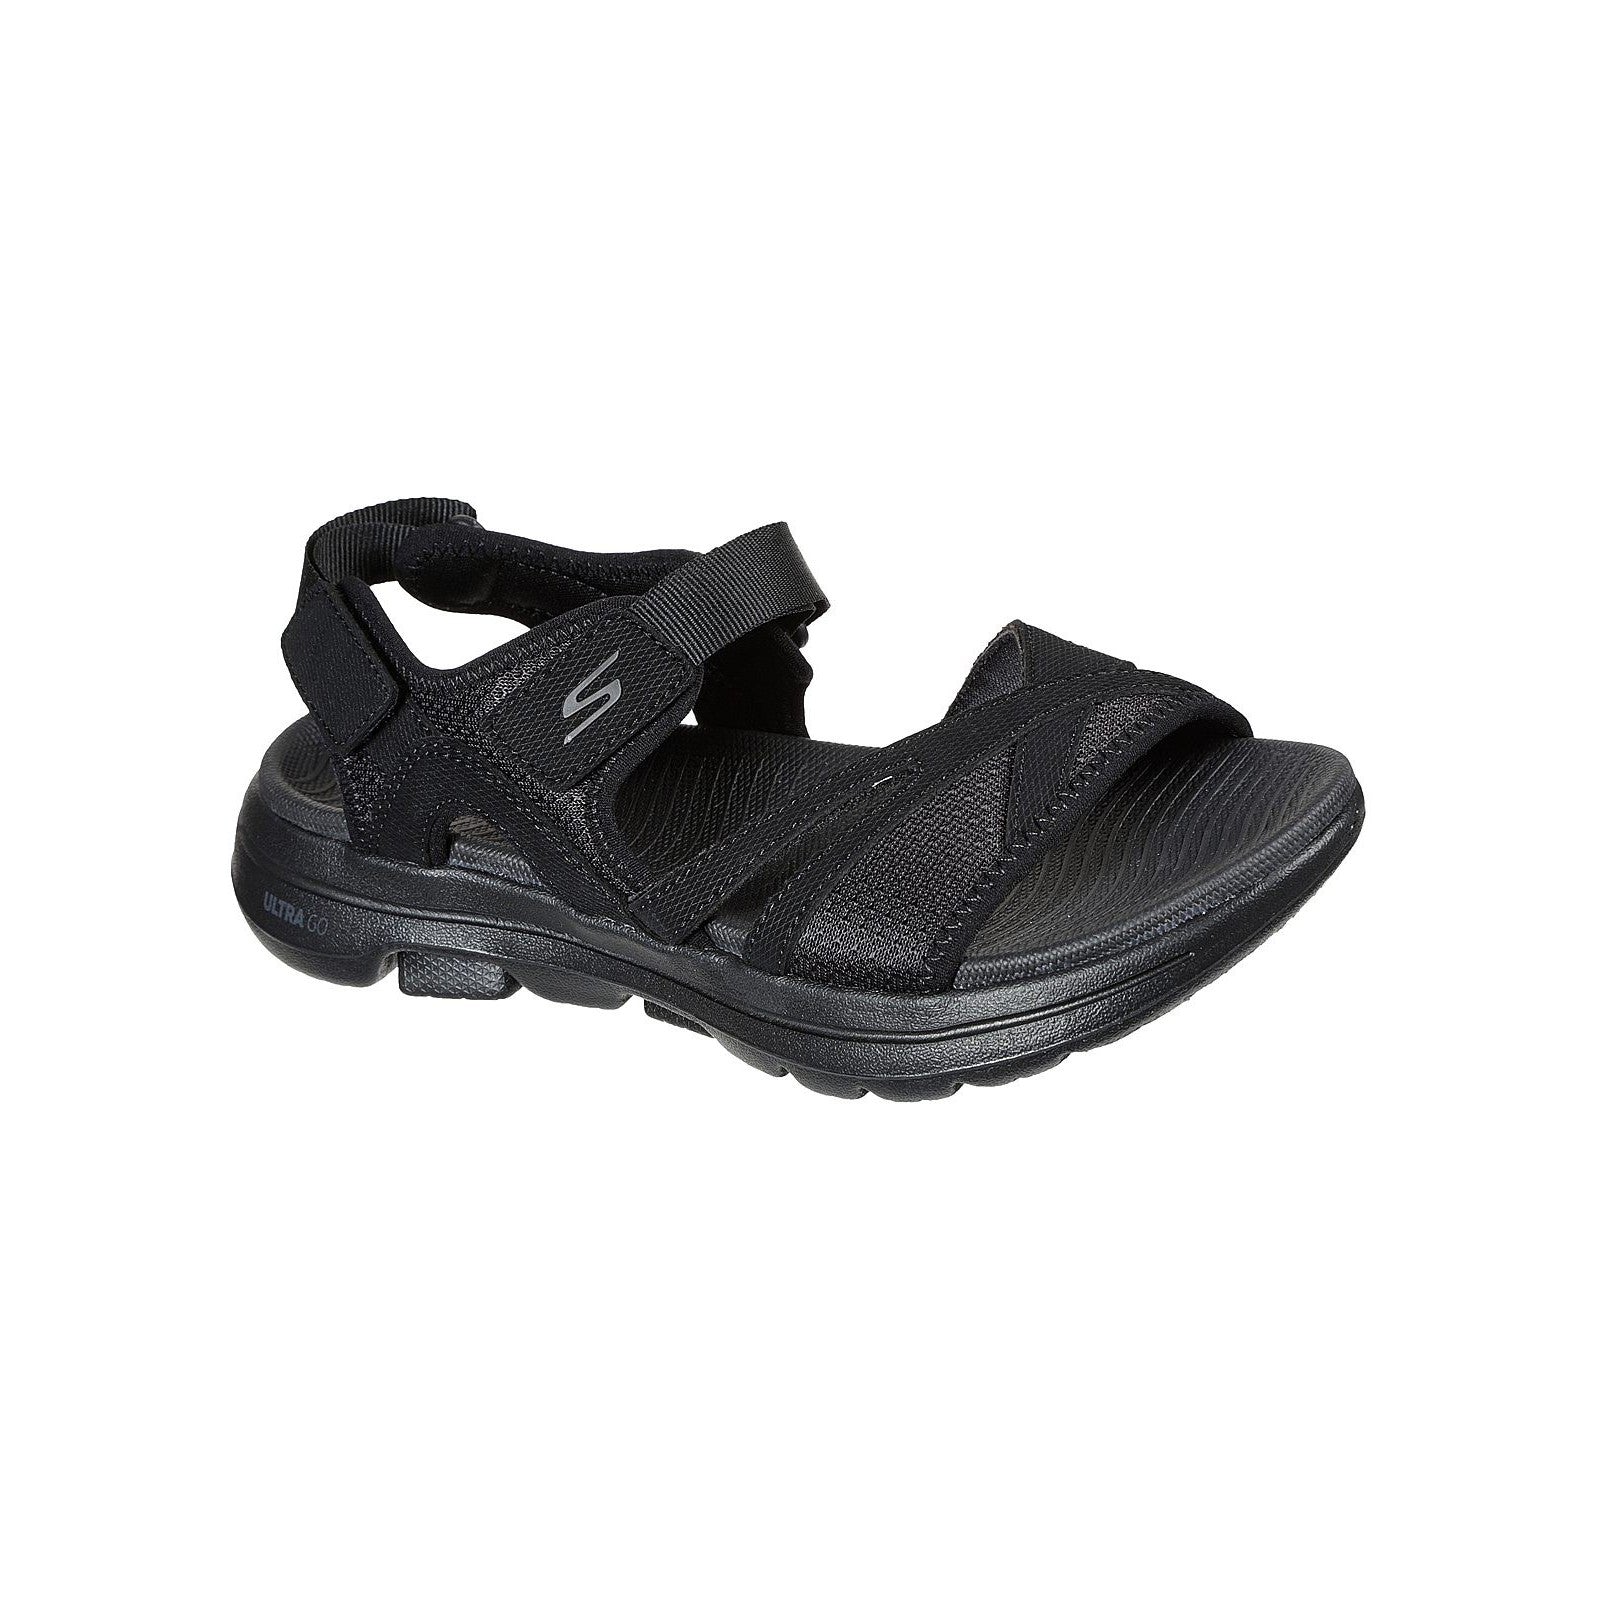 Skechers Go Walk 5 Restored Summer Sandal